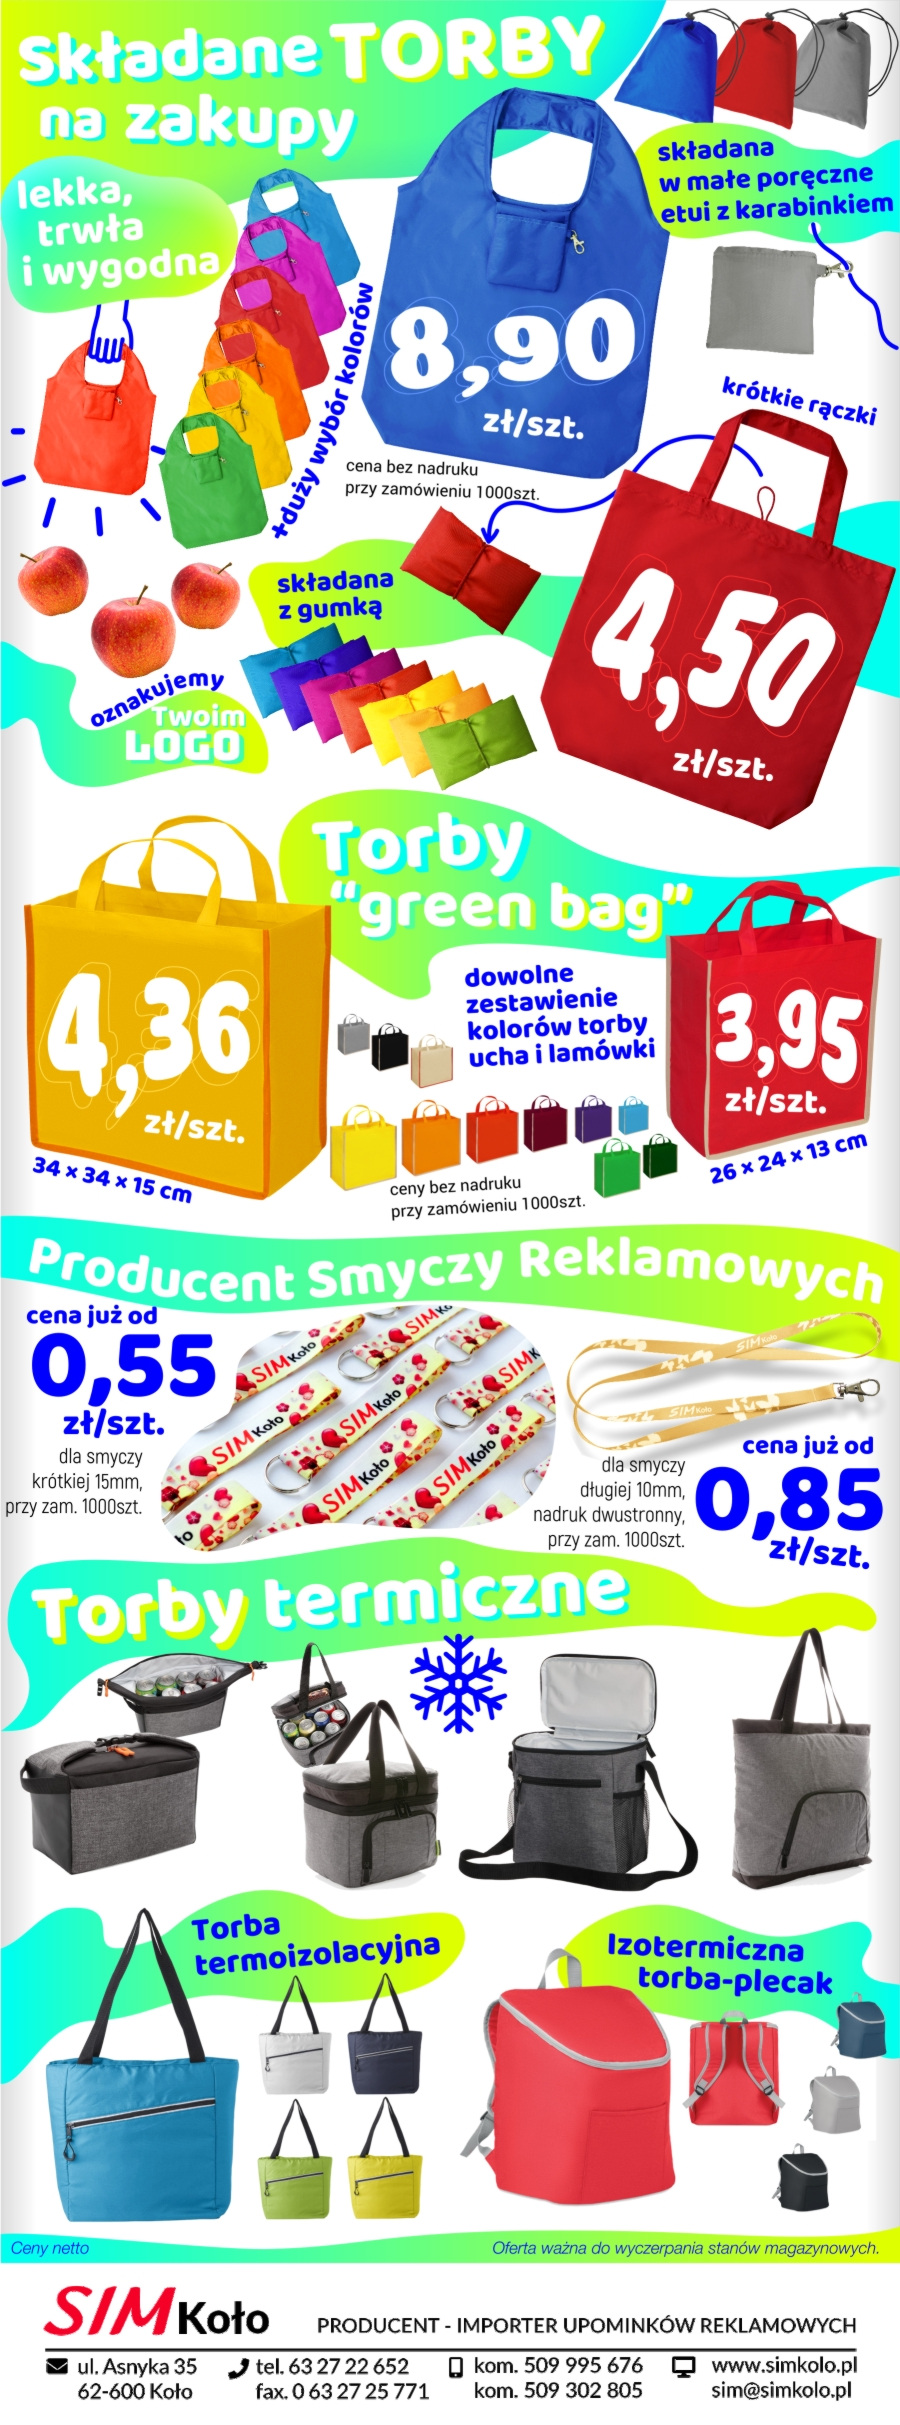 Torby składane na zakupy, torby termiczne i smycze reklamowe